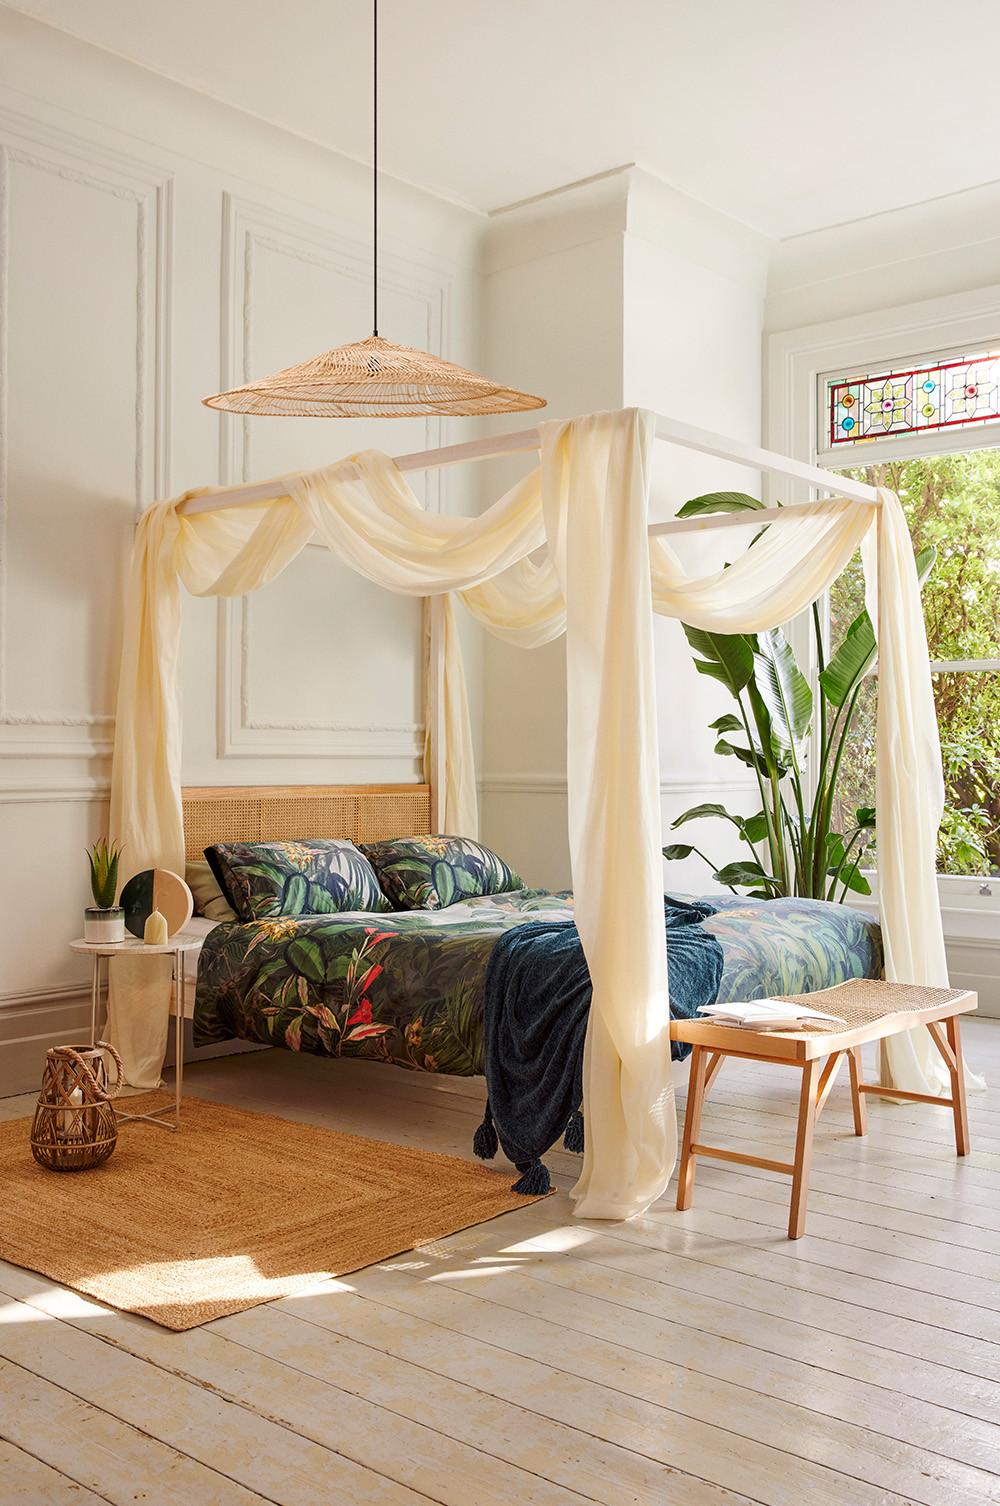 Camera da letto allestita con lenzuola con stampa tropicale e piante